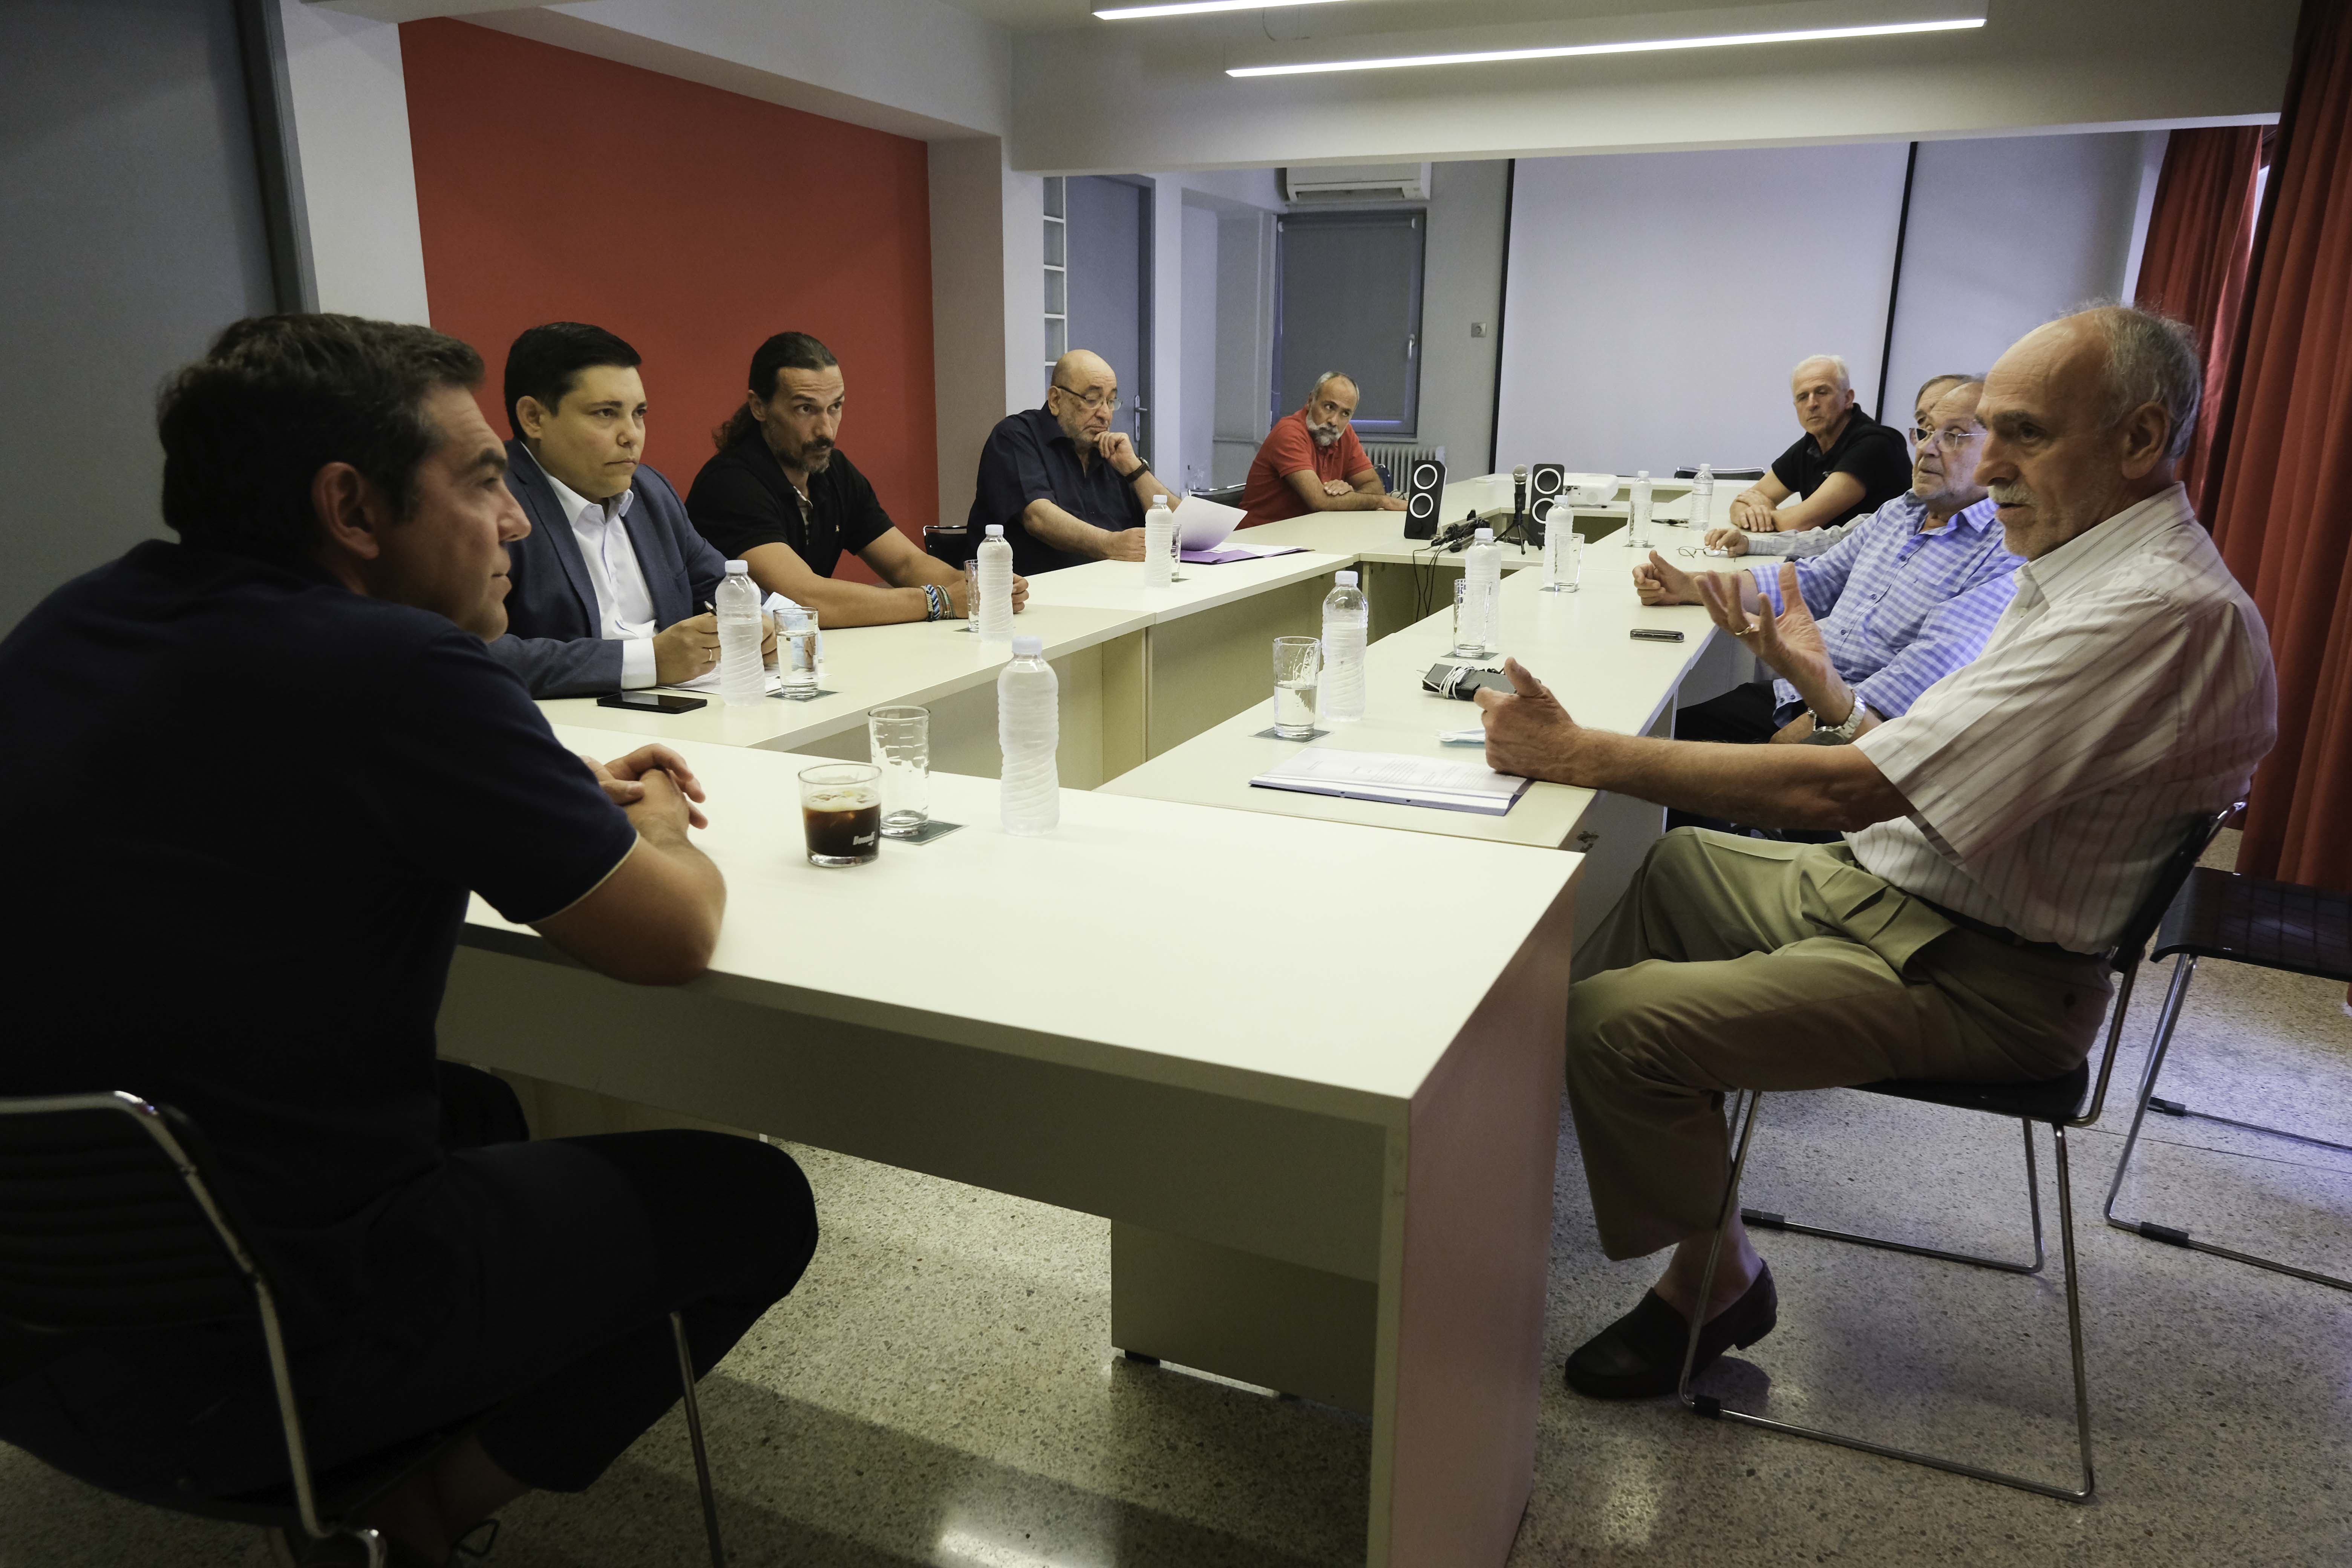 Συνάντηση του Προέδρου του ΣΥΡΙΖΑ – Προοδευτική Συμμαχία, Αλέξη Τσίπρα, με τους επικεφαλής του Συνδέσμου Ελληνικών Γυμναστικών Αθλητικών Σωματείων, της Κολυμβητικής Ομοσπονδίας Ελλάδας και της Ελληνικής Ιστιοπλοϊκής Ομοσπονδίας